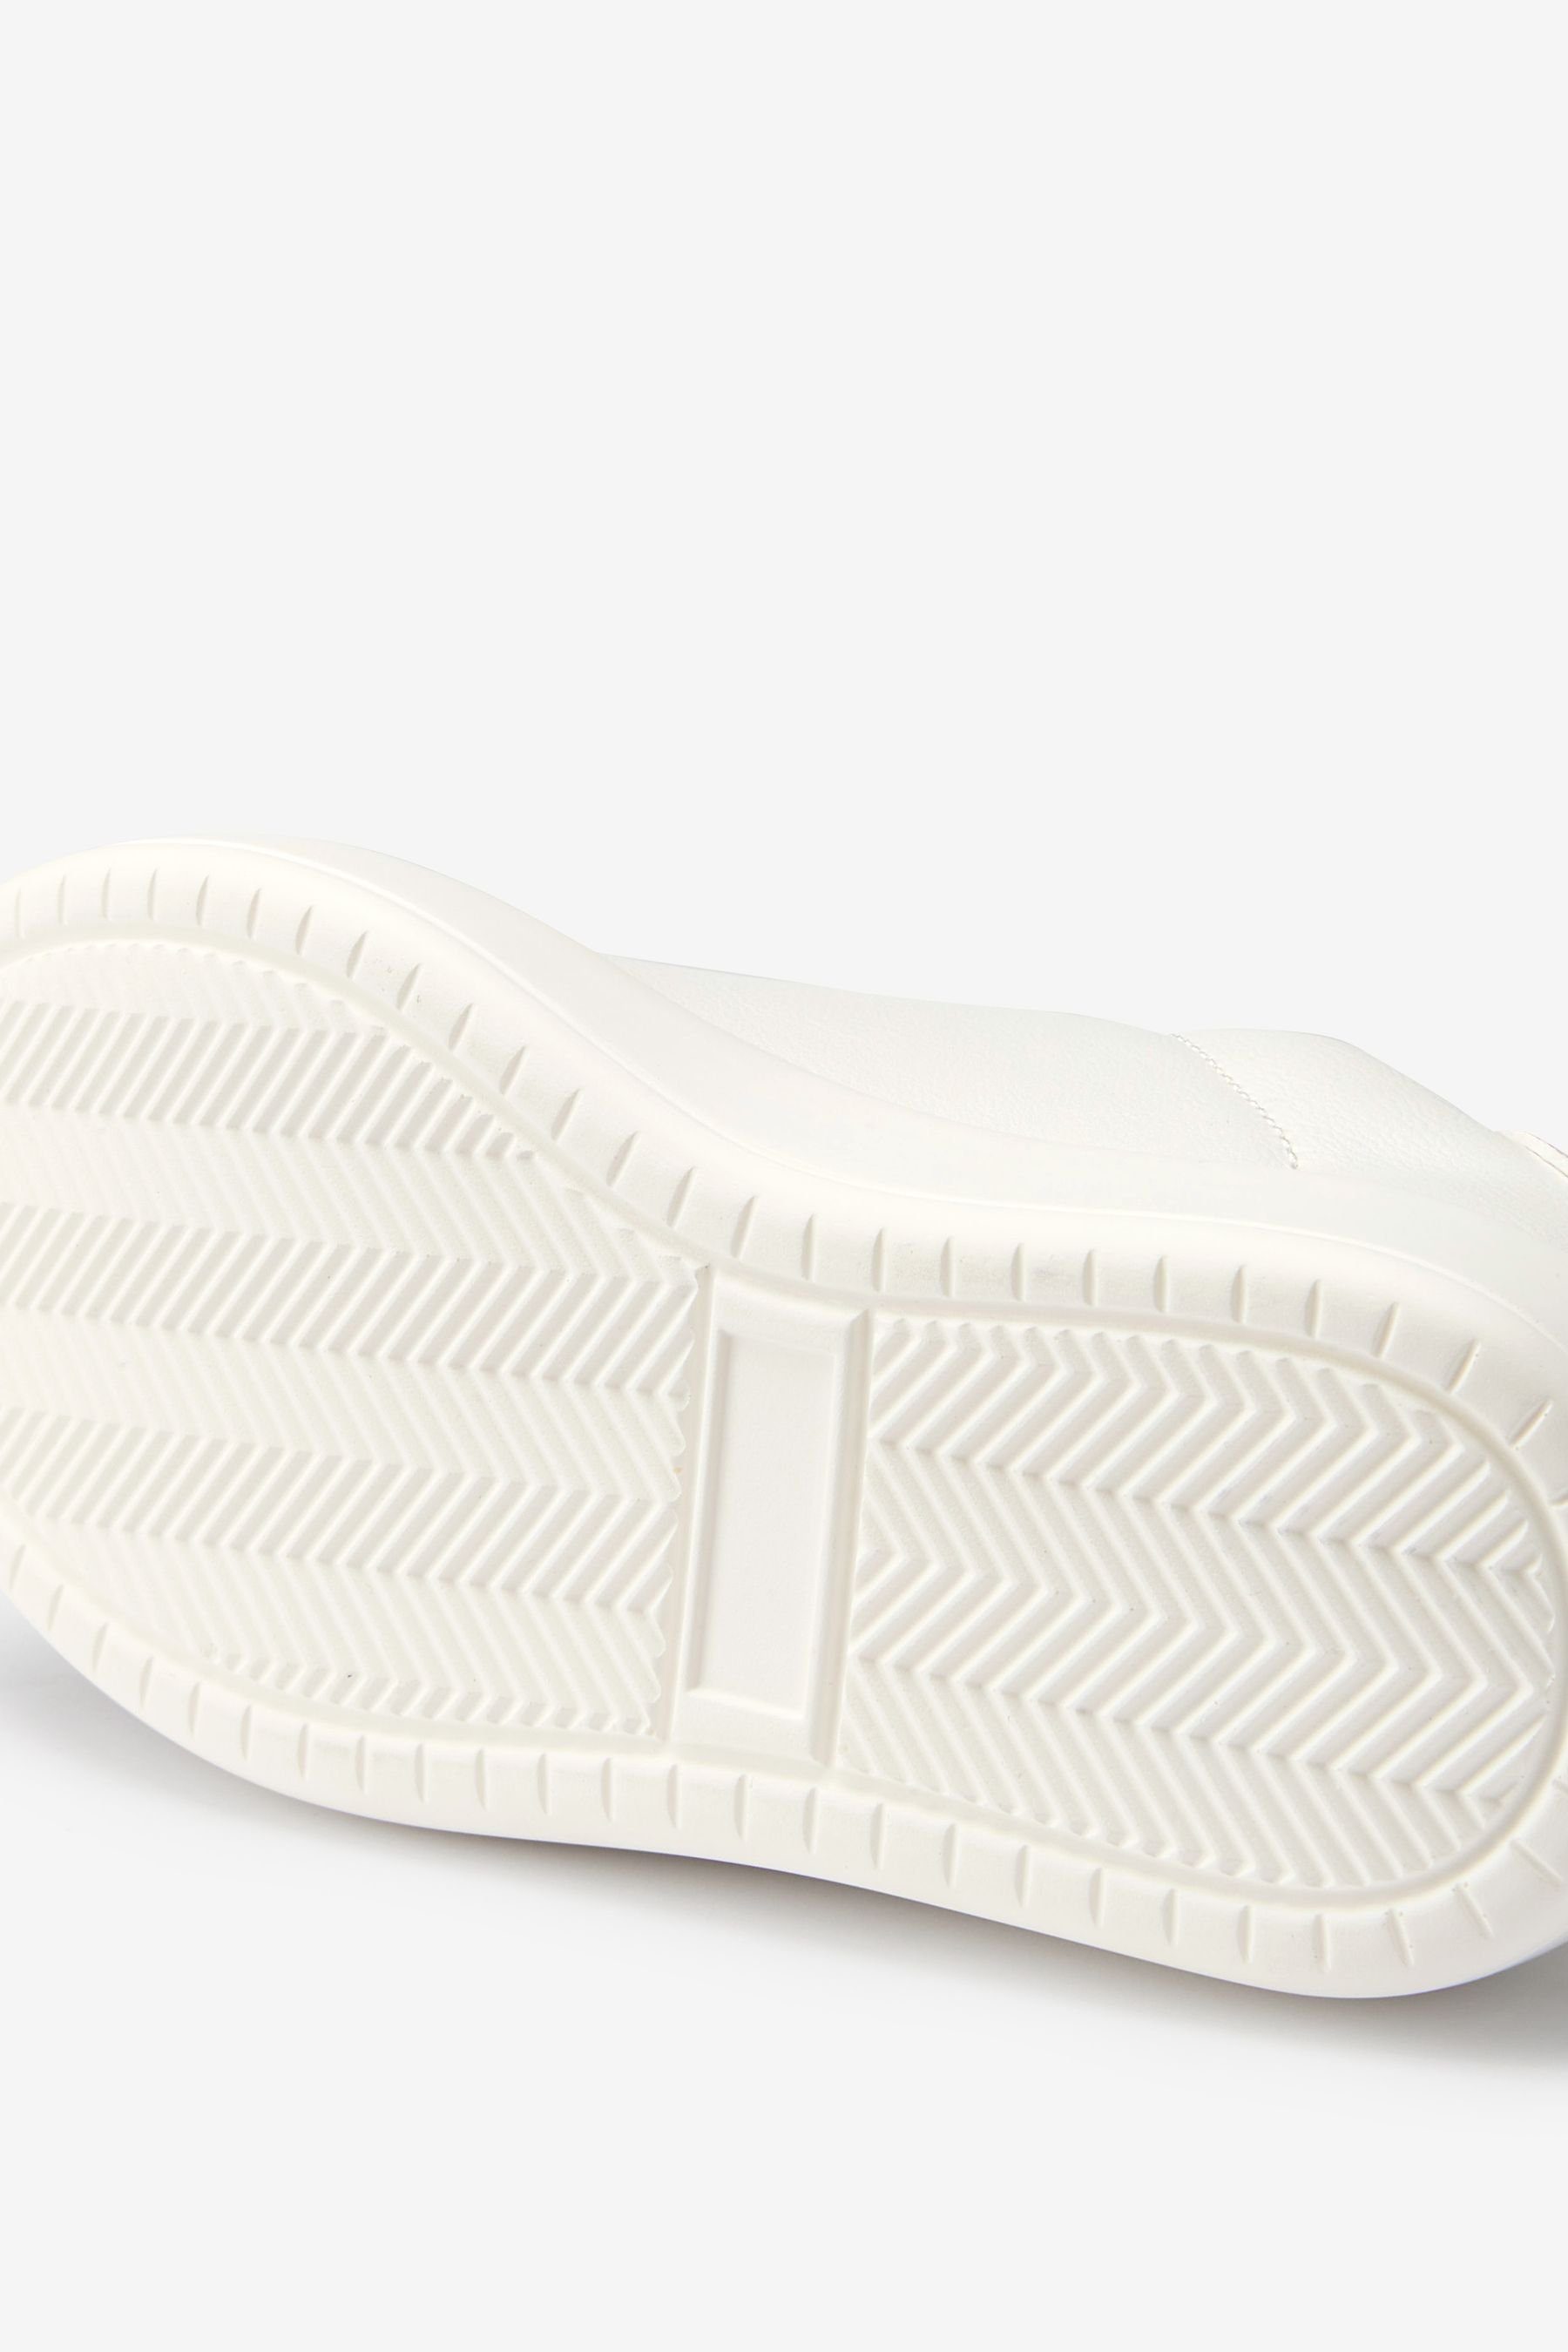 Kompakte Sneaker White/Iridescent Next Sneaker (1-tlg)